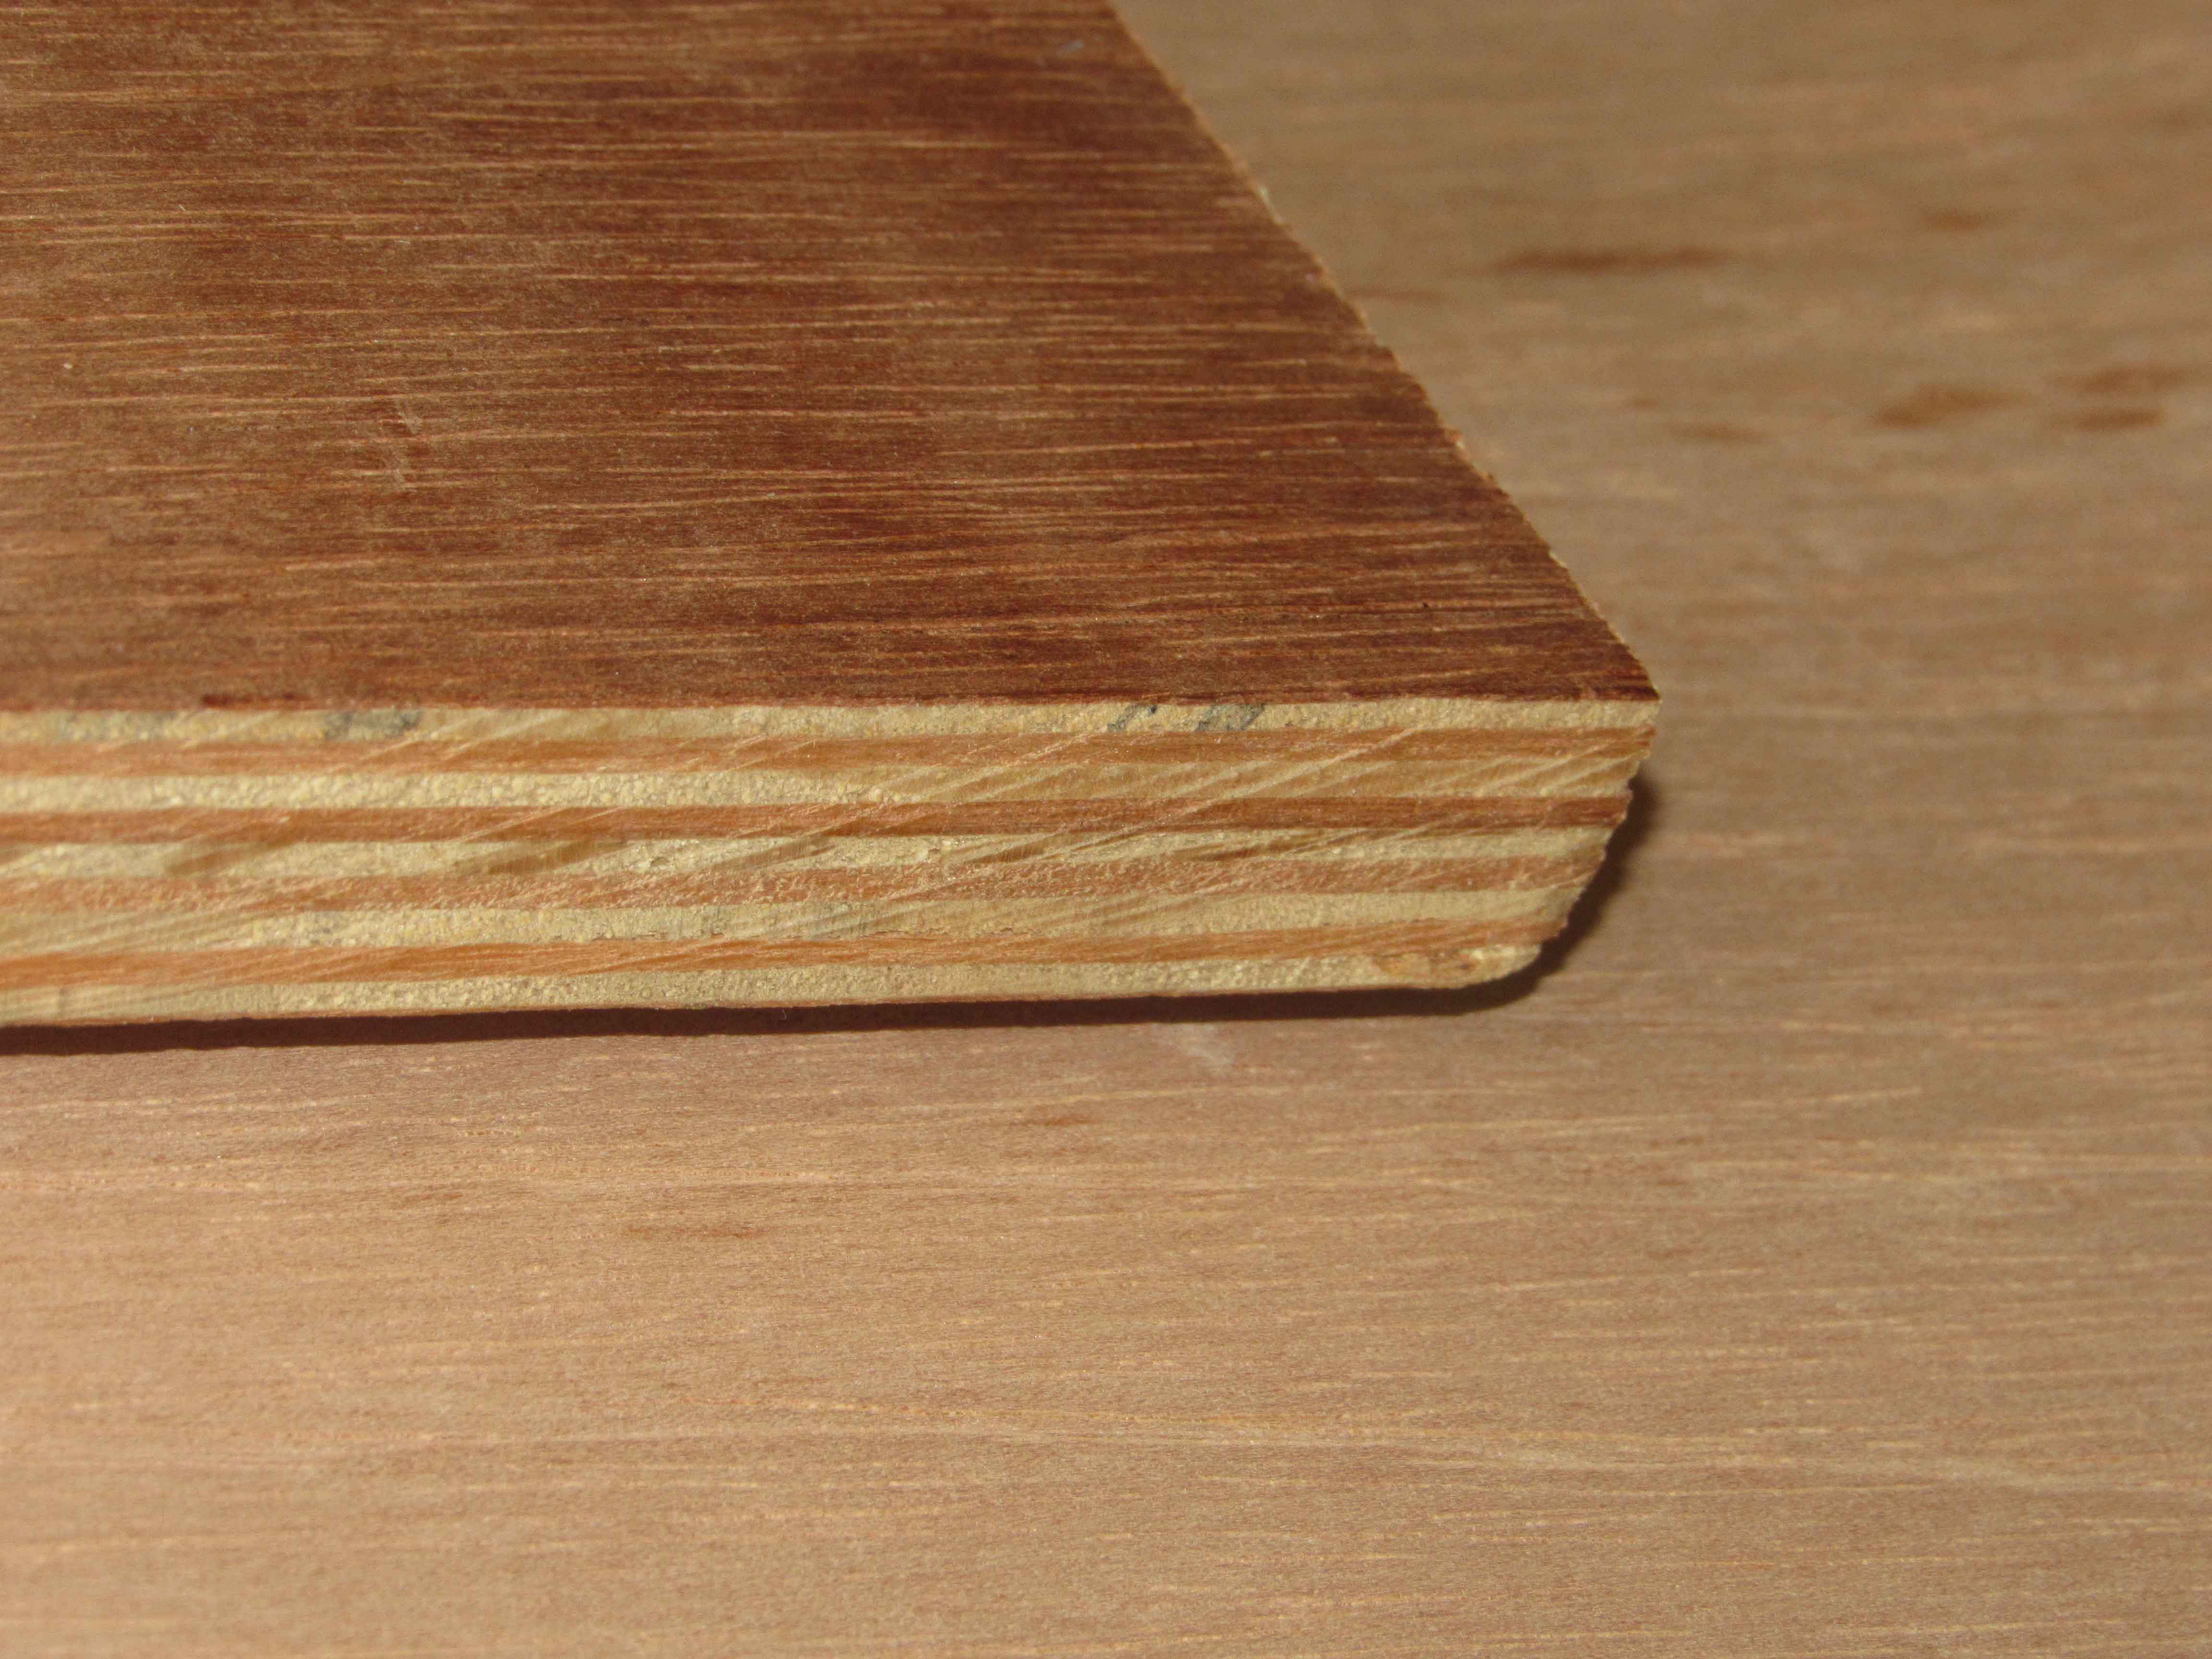 Spanish Cedar Plywood Full Sheets 48x96 (4' x 8')